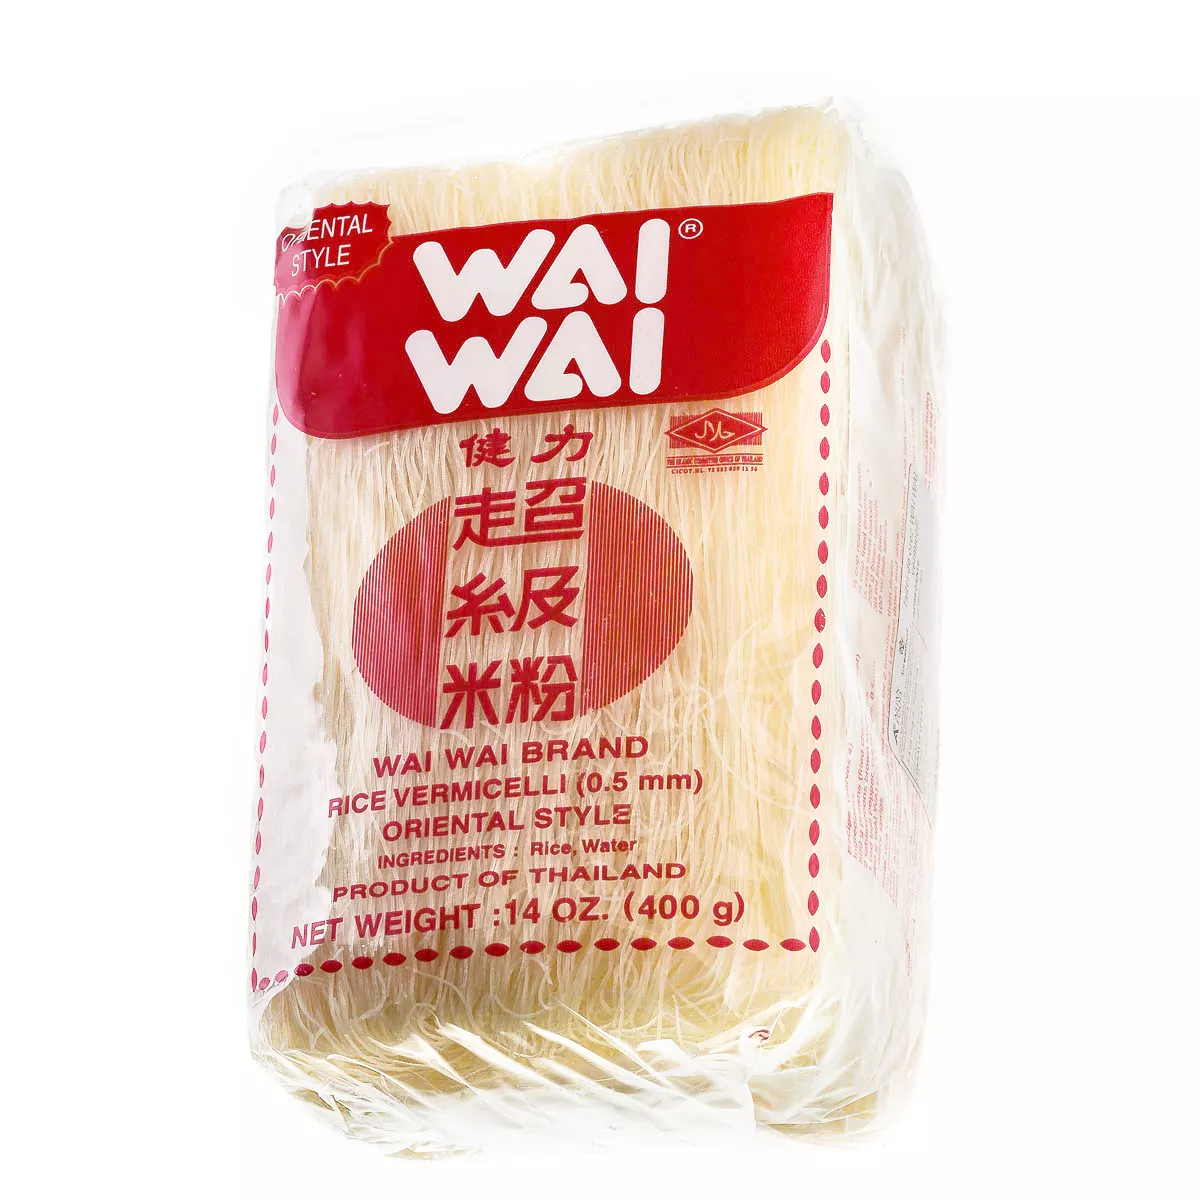 Taitei de orez WAI WAI vermicelli 400g, [],asianfood.ro